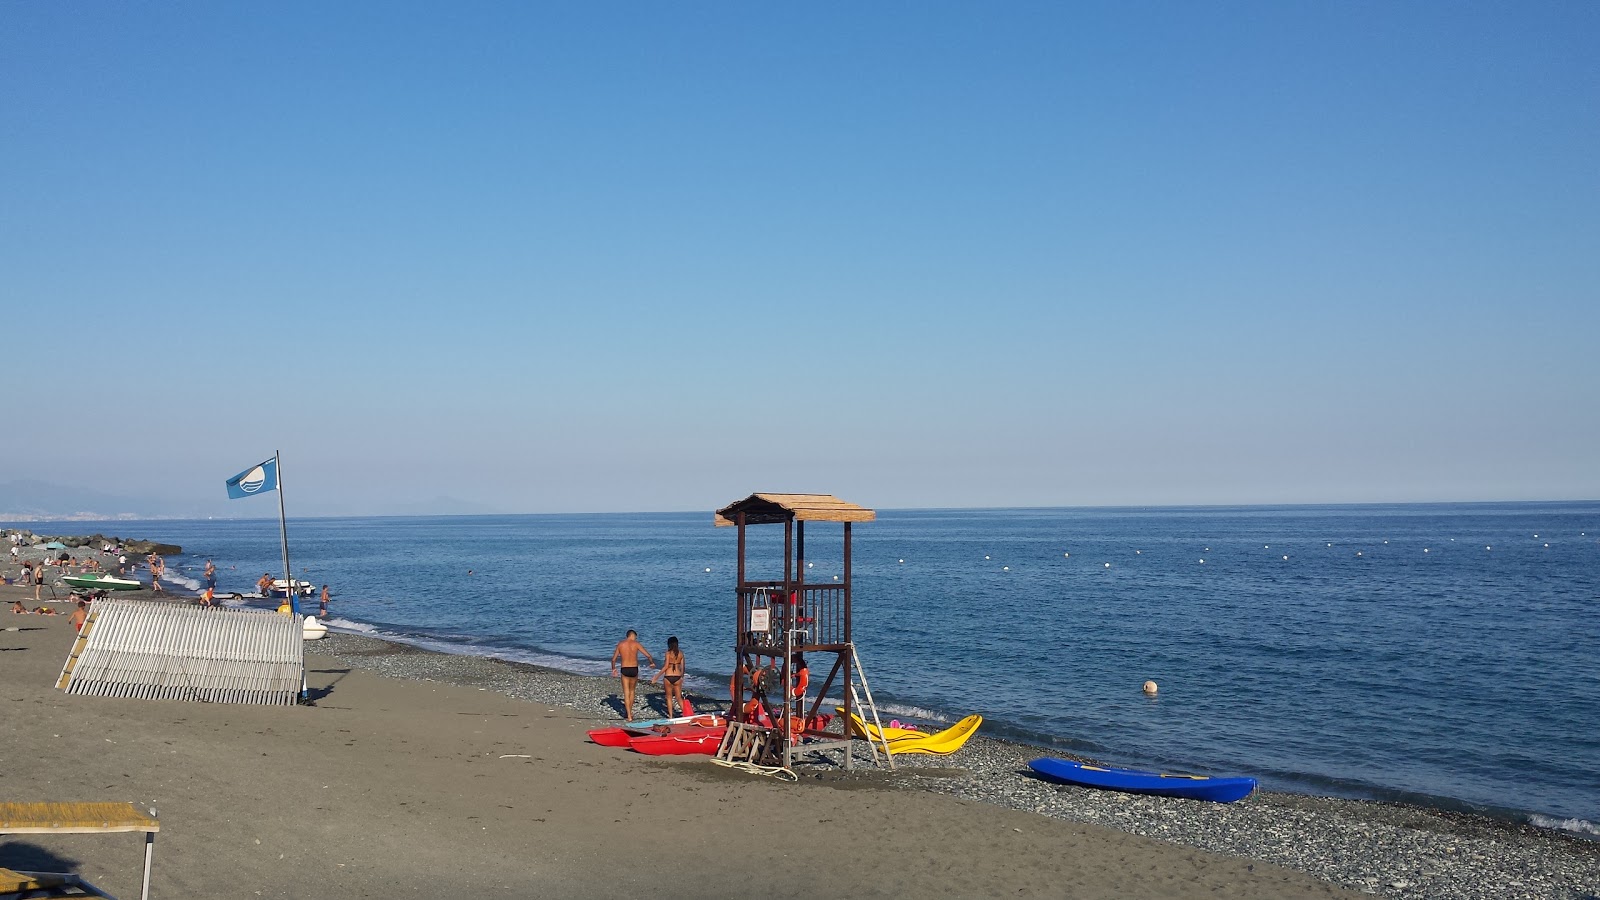 Foto de Spiaggia Lungomare - lugar popular entre los conocedores del relax